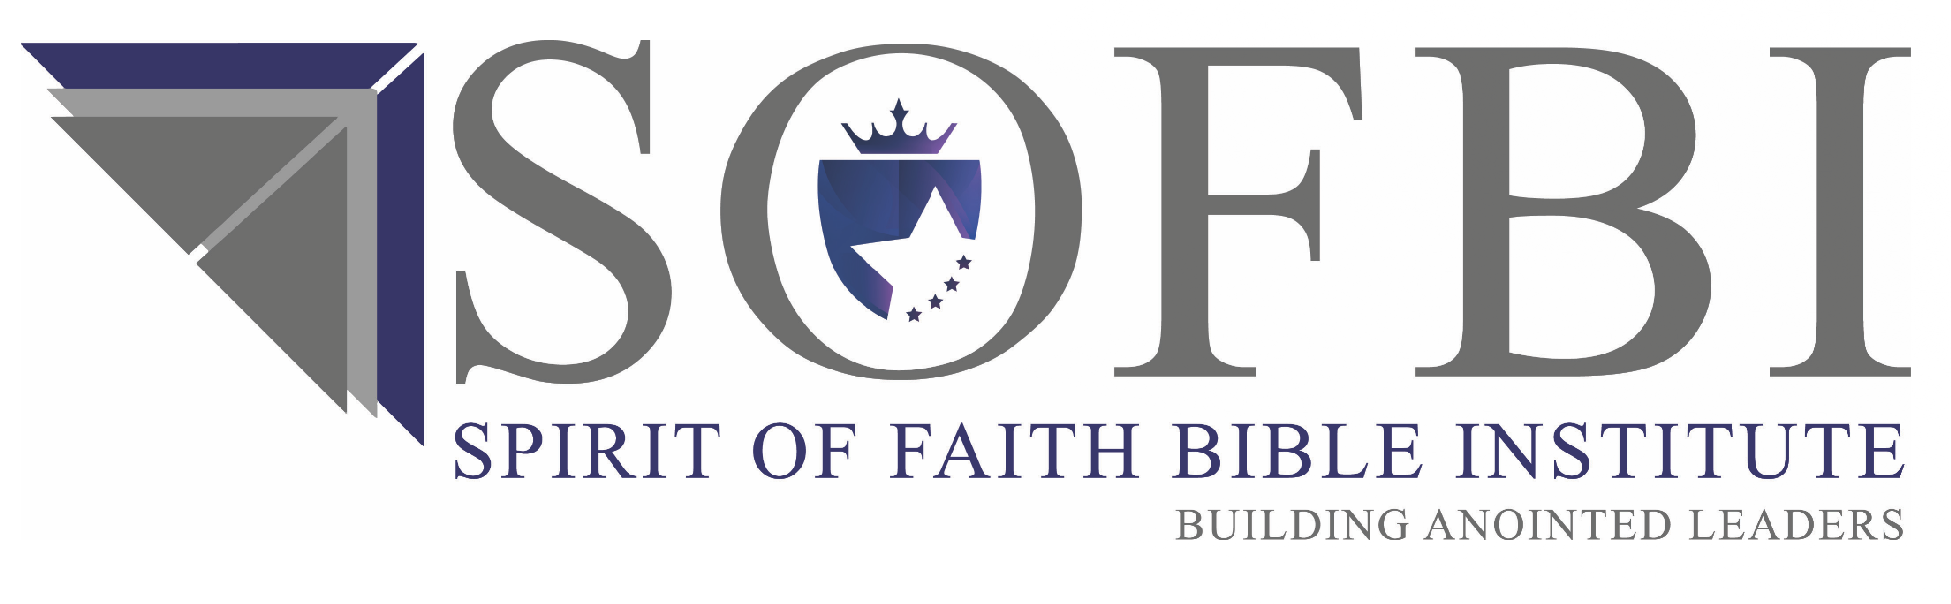 Spirit of Faith Bible Institute